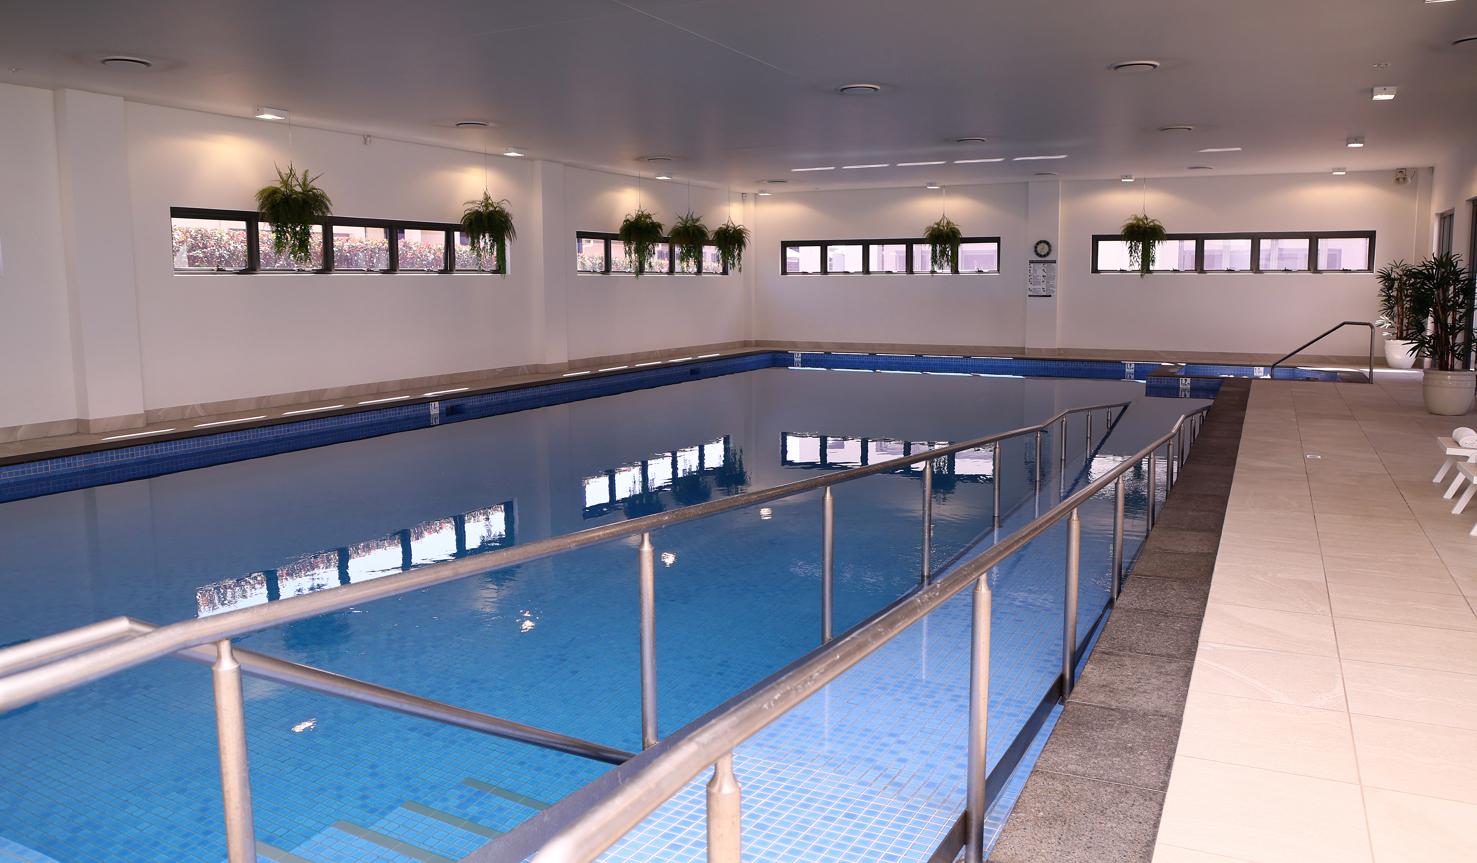 Halcyon Ridge indoor pool facility 